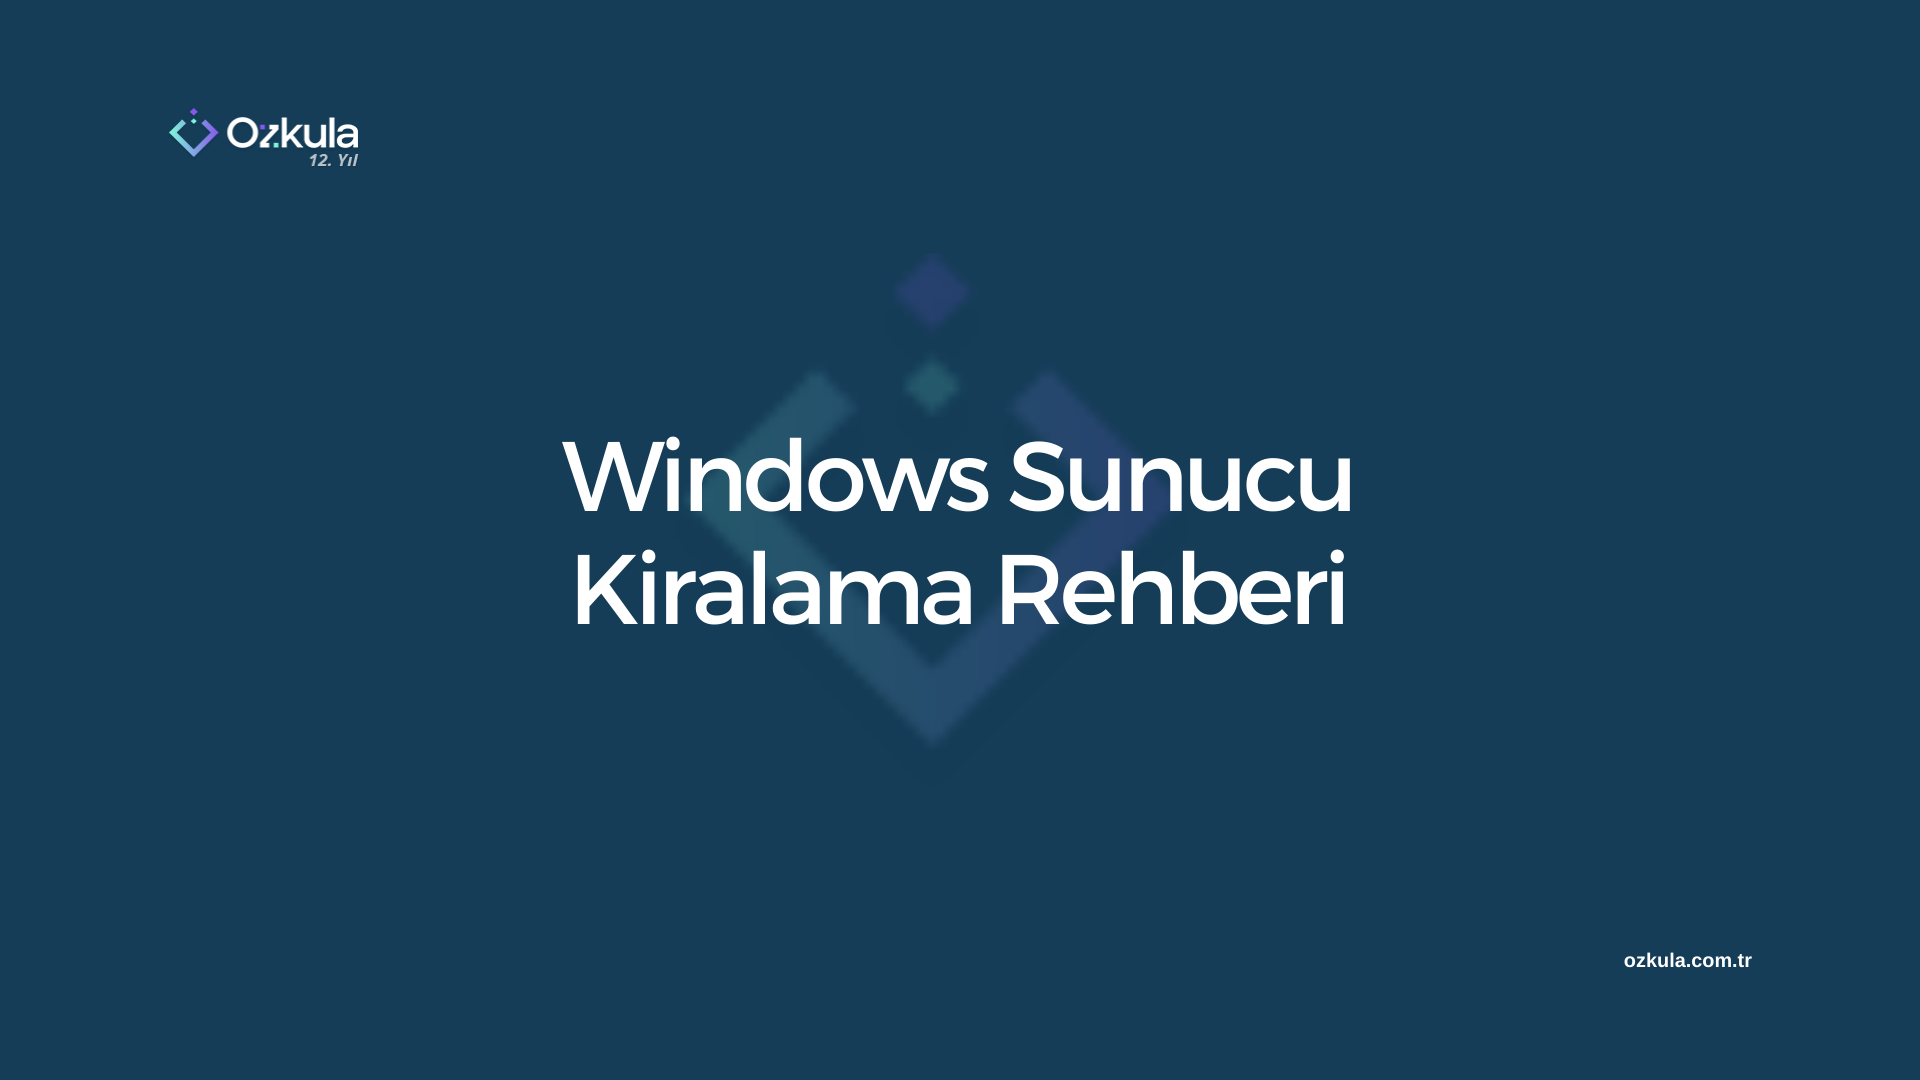 Windows Sunucu Kiralama Rehberi